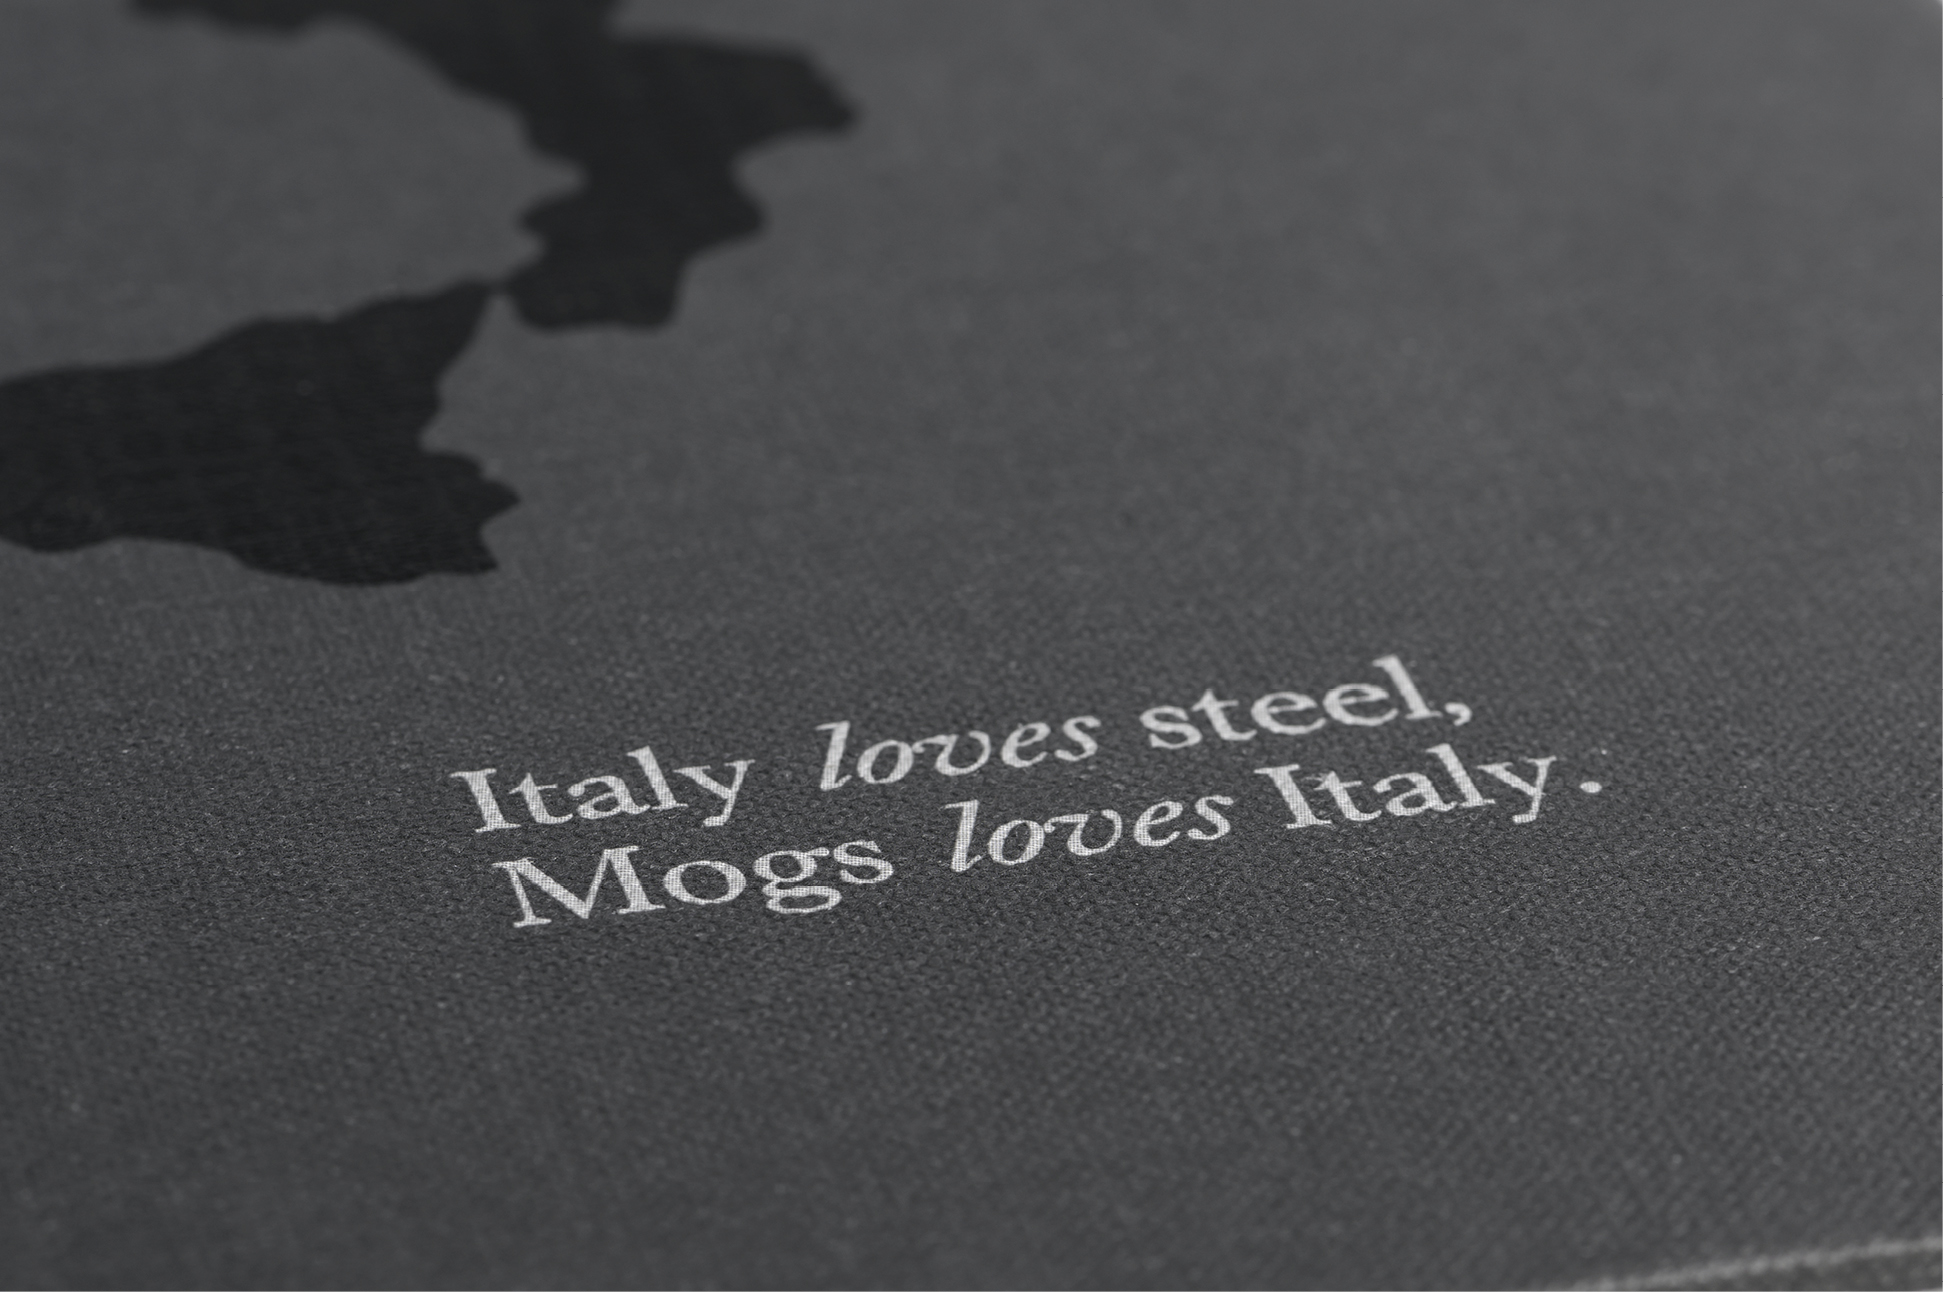 Scopri di più sull'articolo Italy loves steel